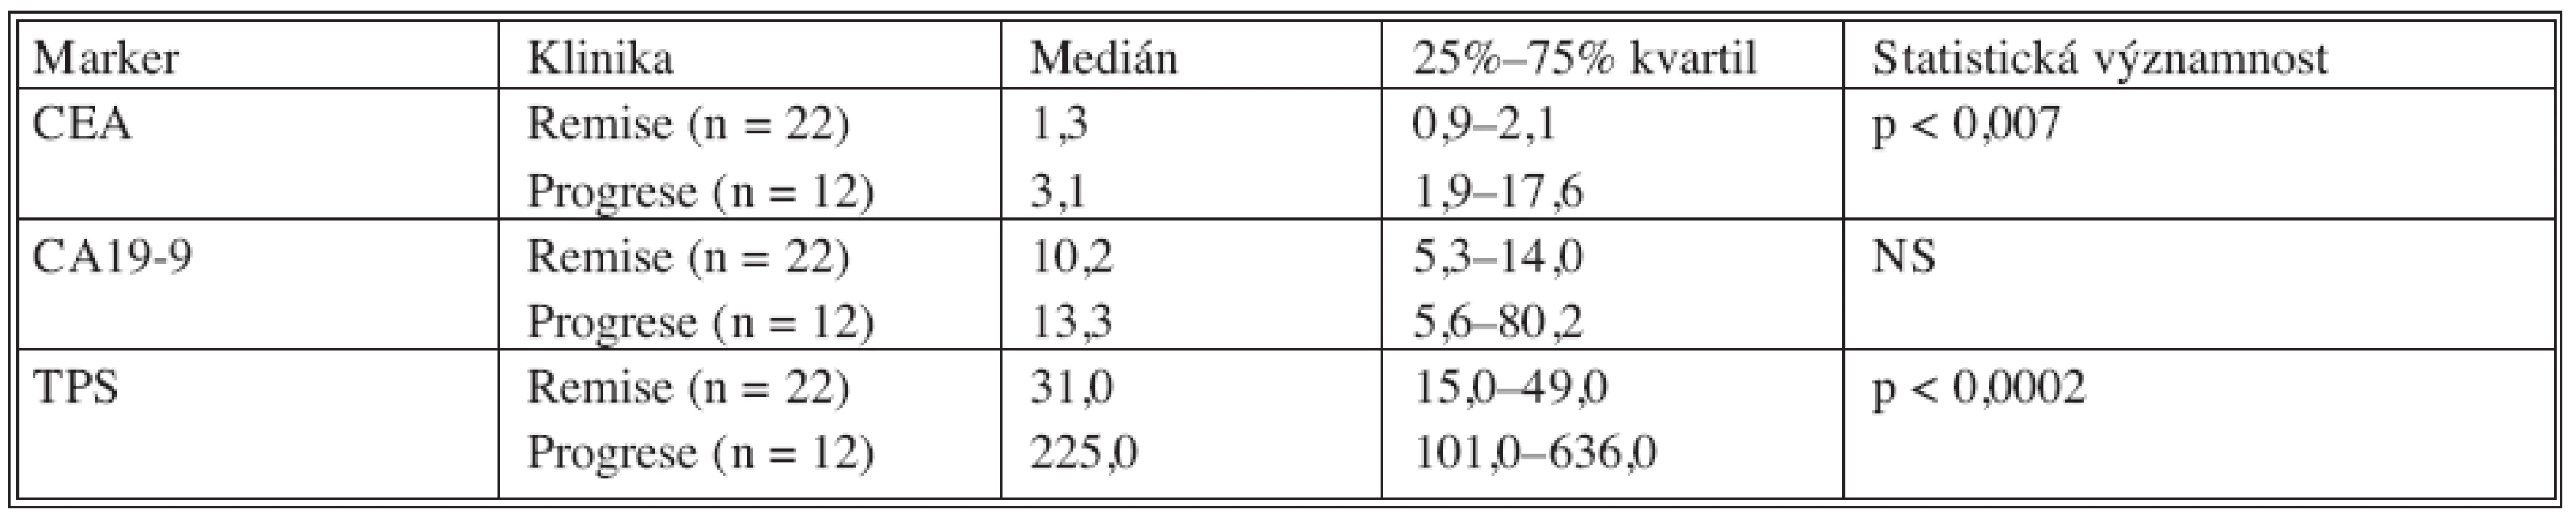 Porovnání remisních a progresních hodnot u nemocných s kolorektálním karcinomem
Tab. 8. Comparison between the remission and the progression values in colorectal carcinoma patients